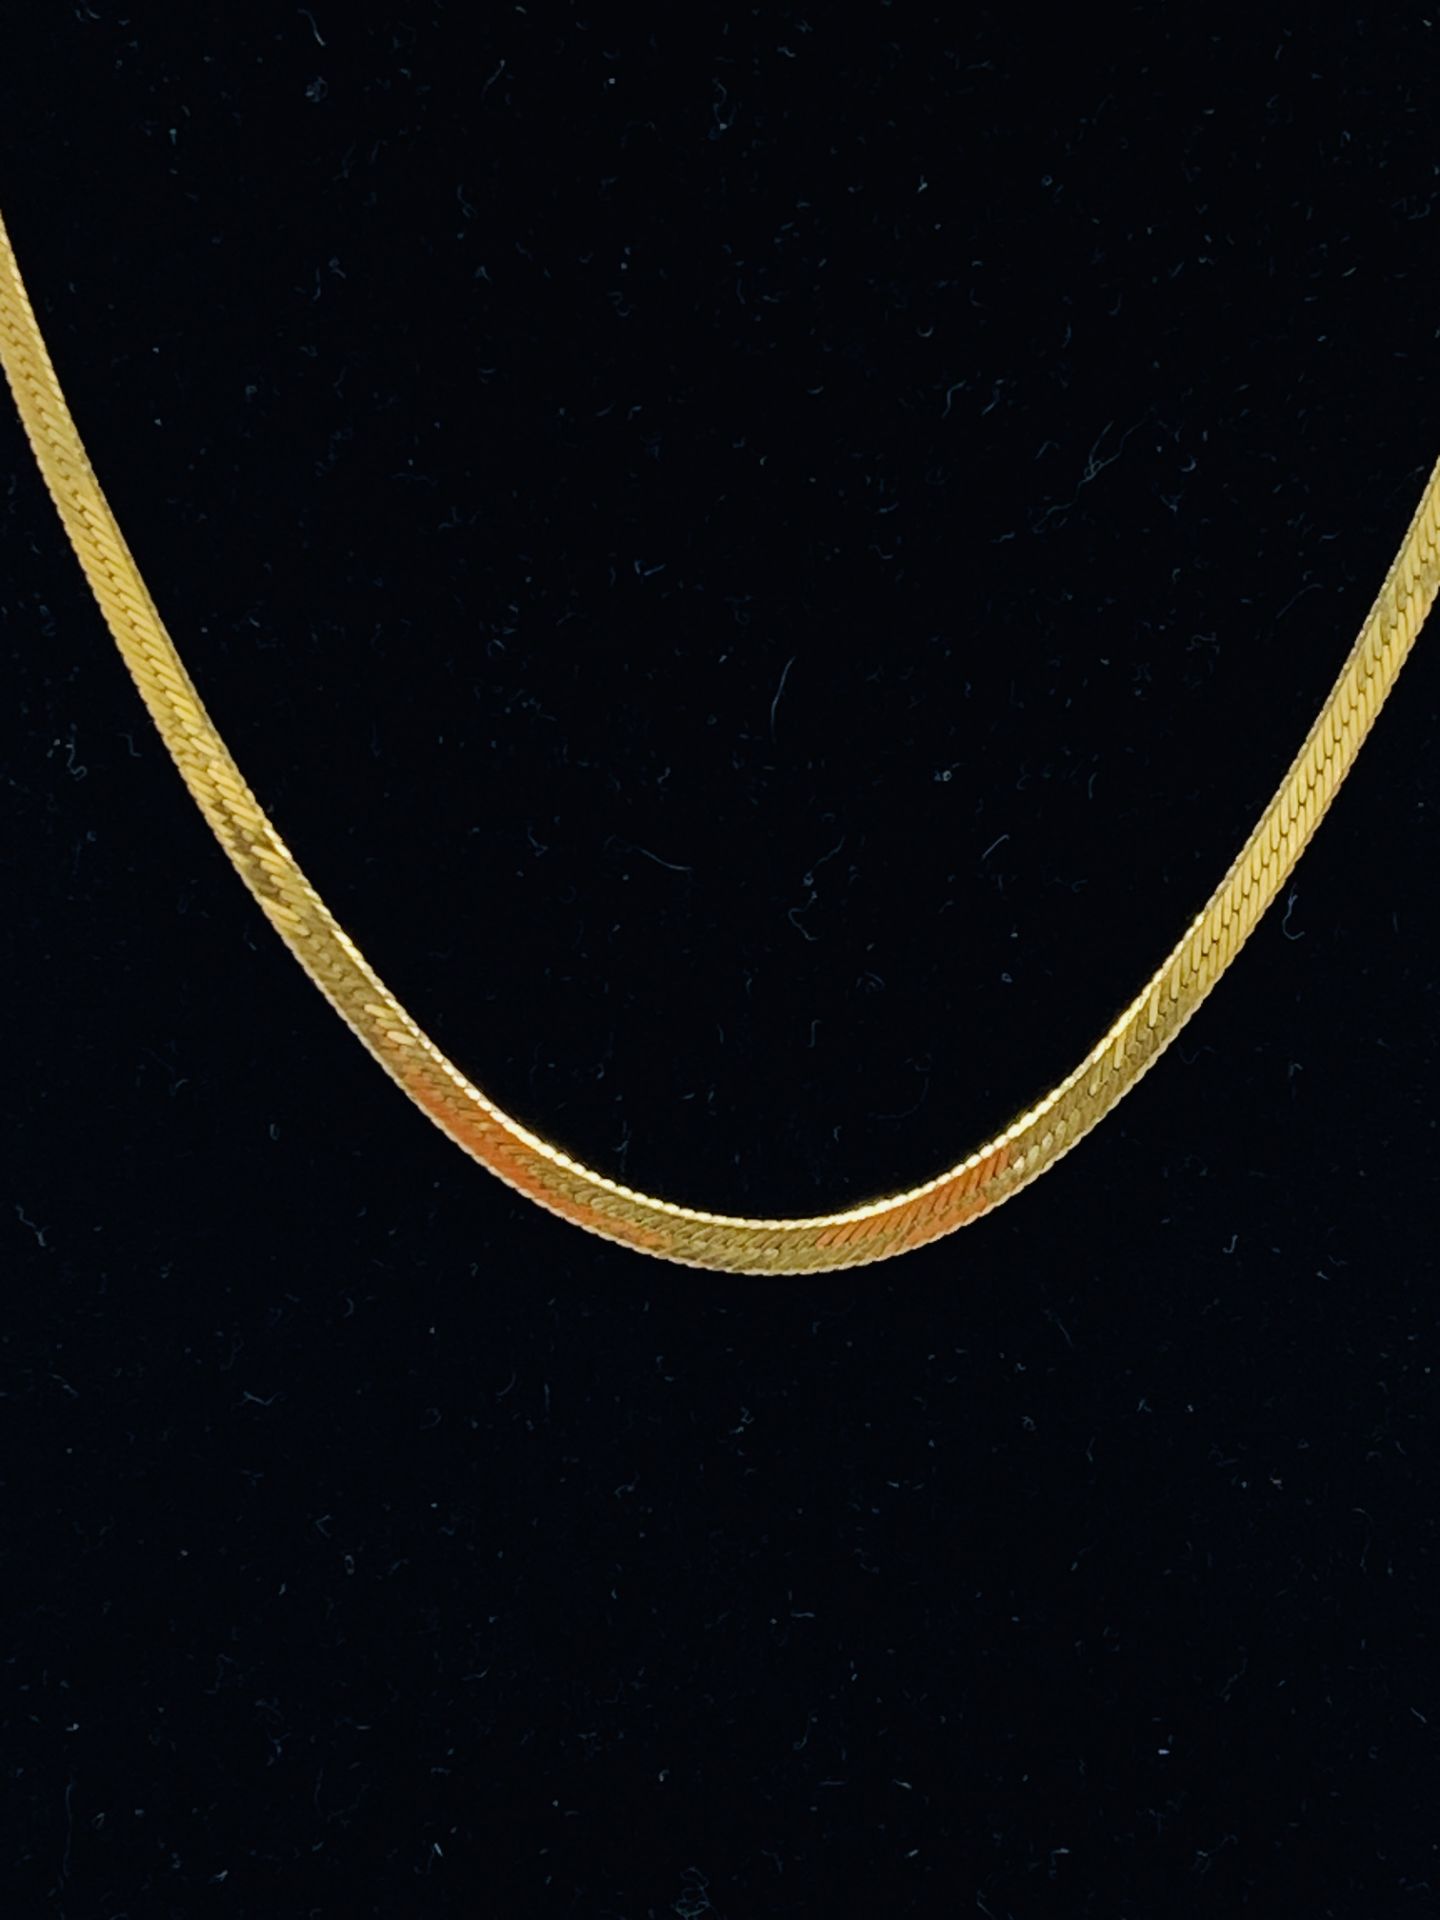 9ct gold necklace - Bild 2 aus 2